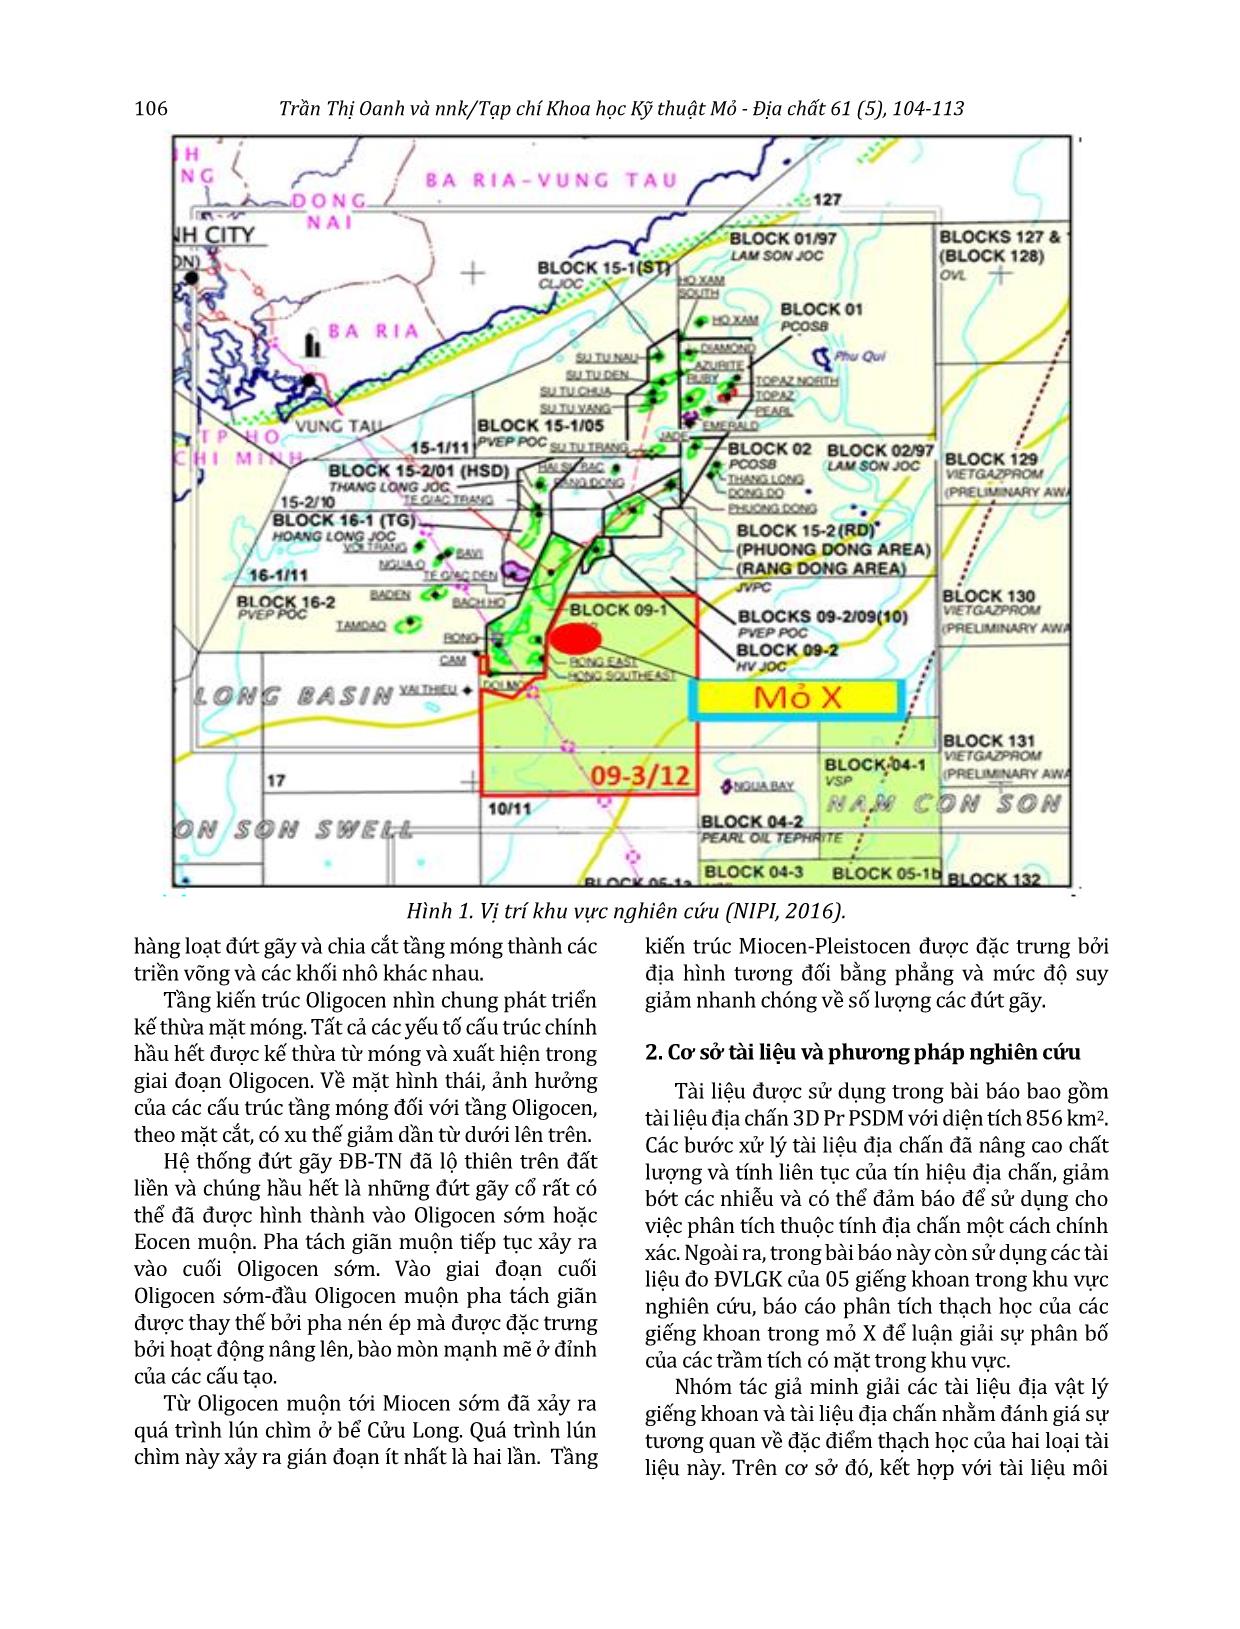 Ứng dụng mạng trí tuệ nhân tạo dự báo phân bố vật liệu núi lửa trong tập D, mỏ X, bể Cửu Long trang 3